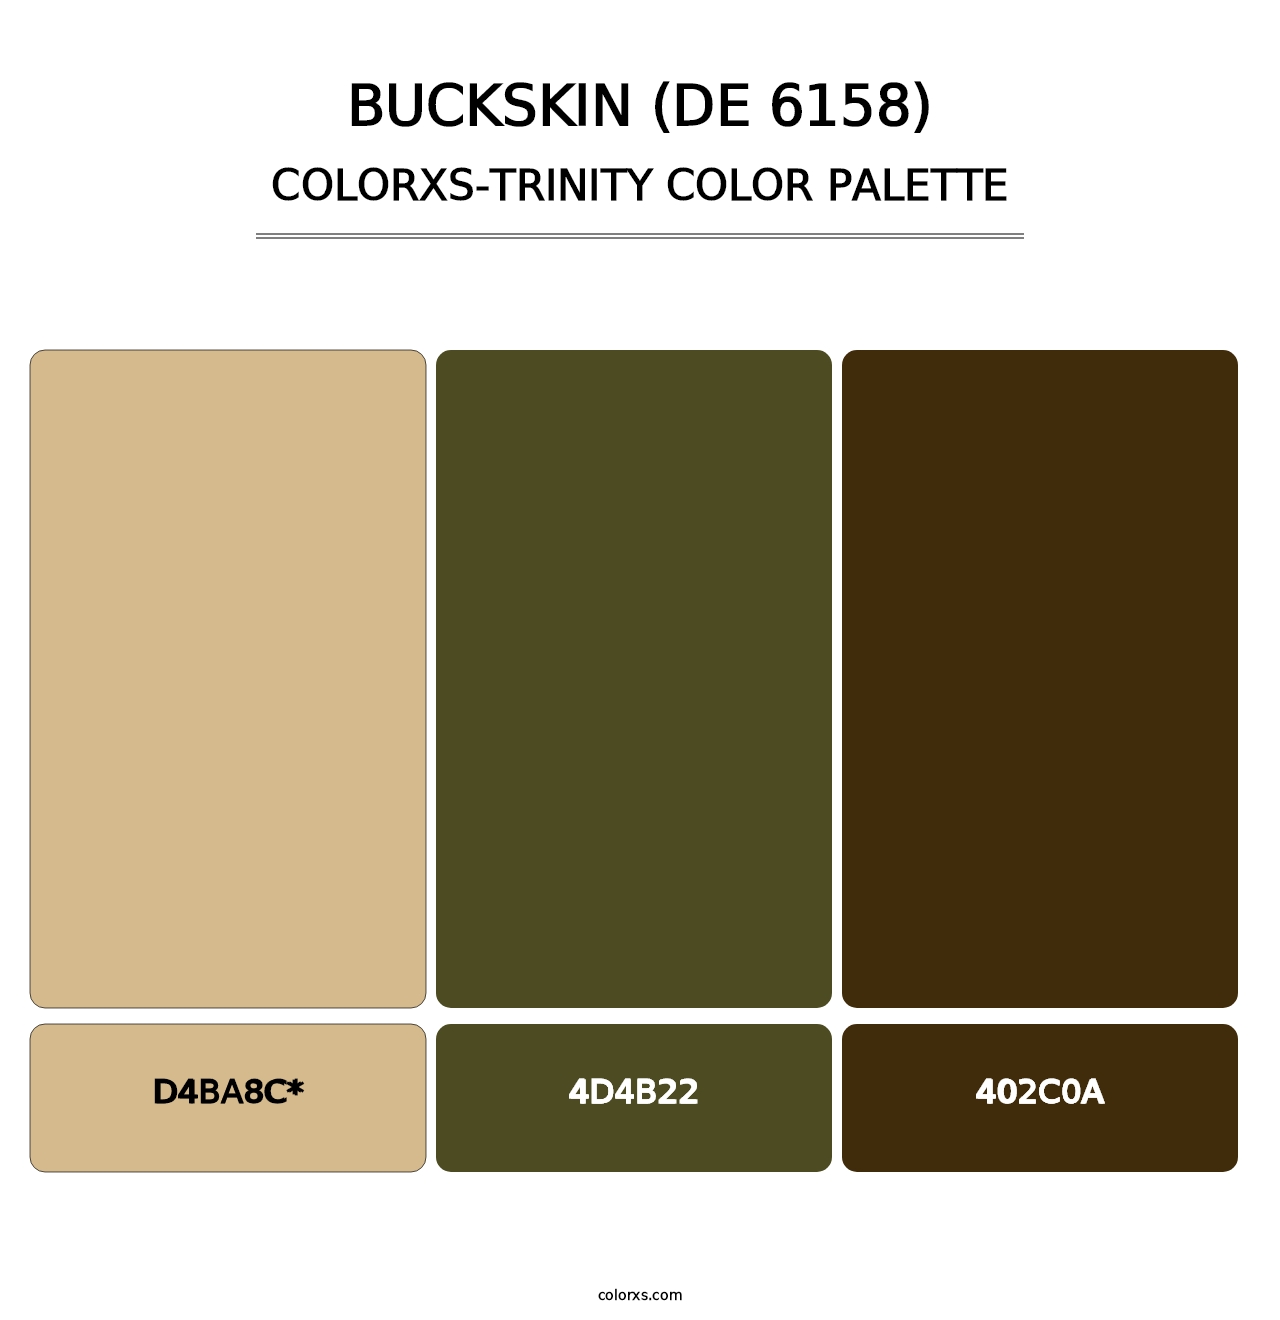 Buckskin (DE 6158) - Colorxs Trinity Palette